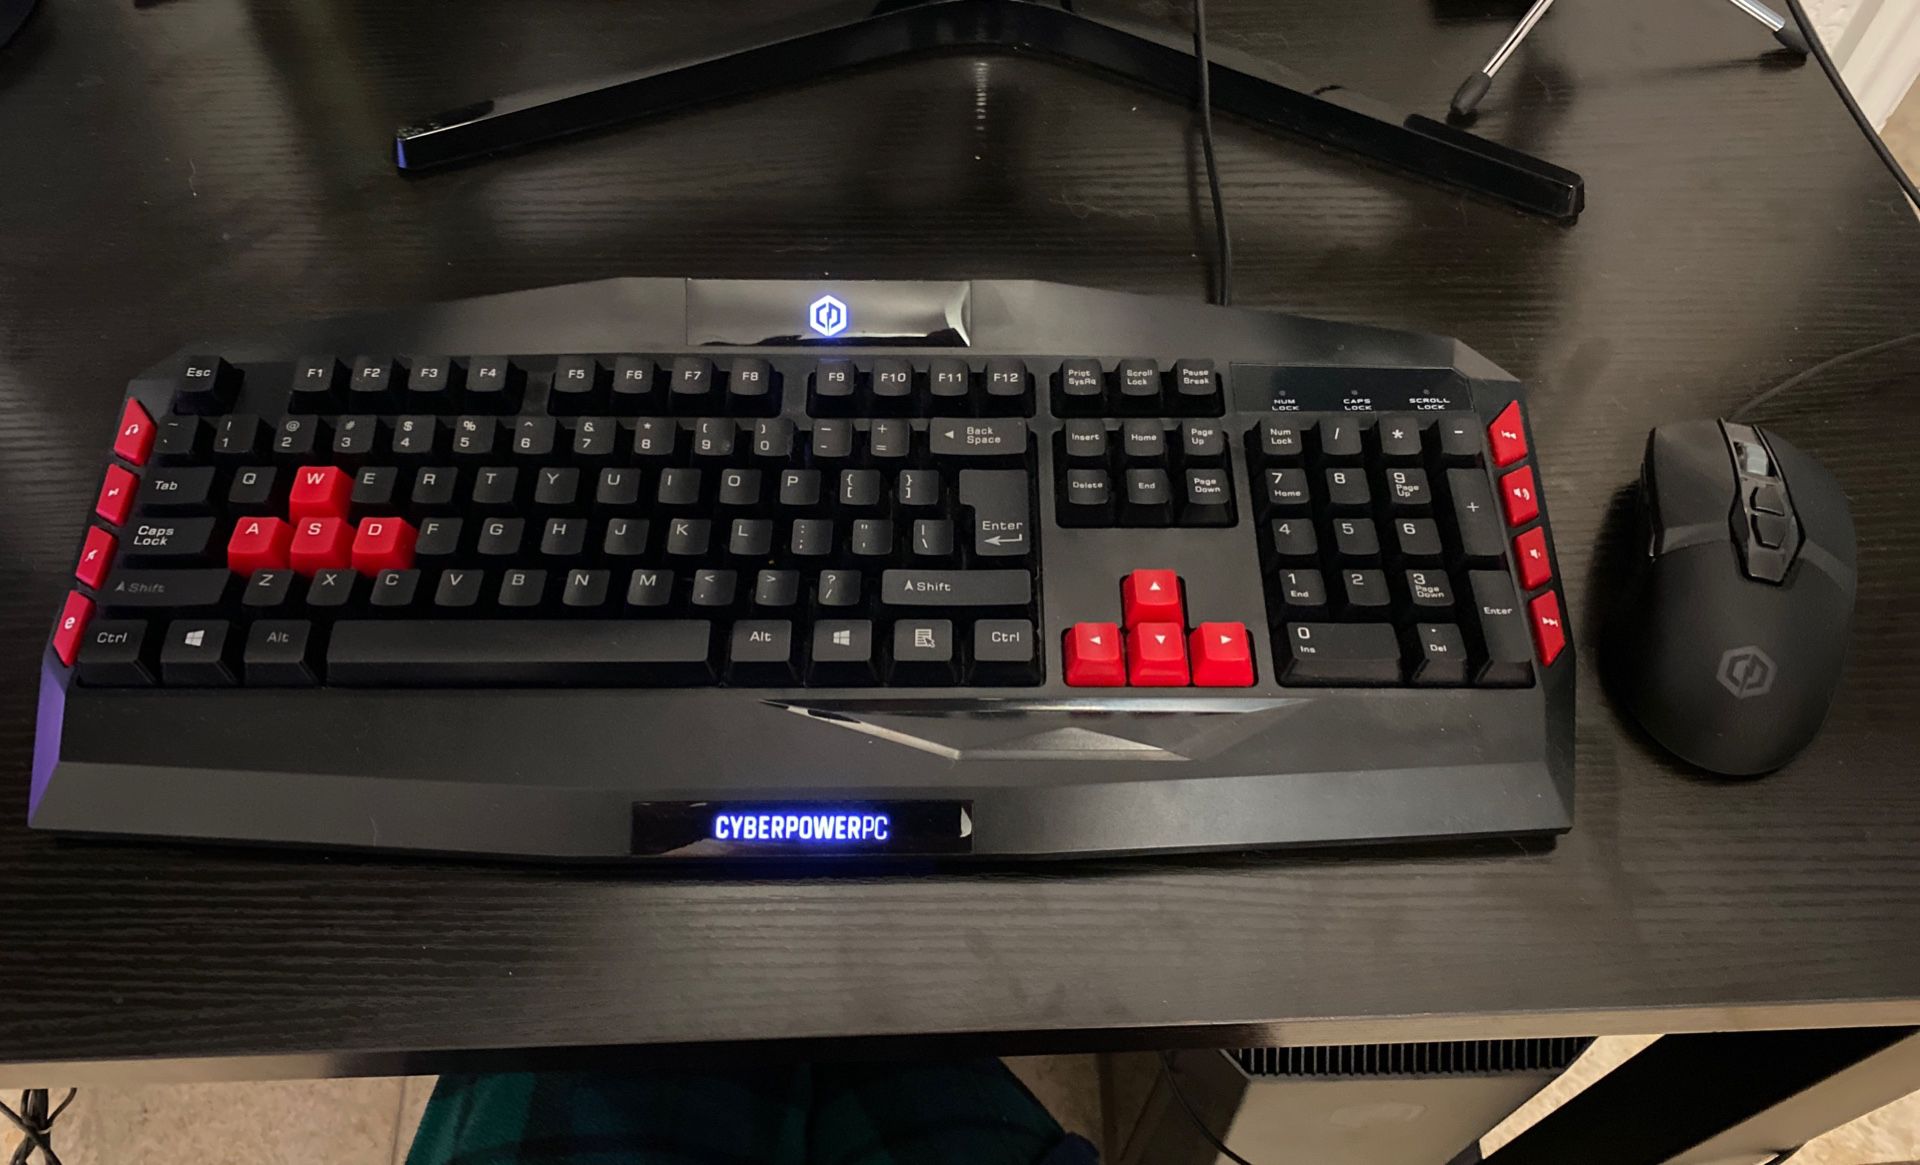 CyberpowerPC Keyboard & Mouse